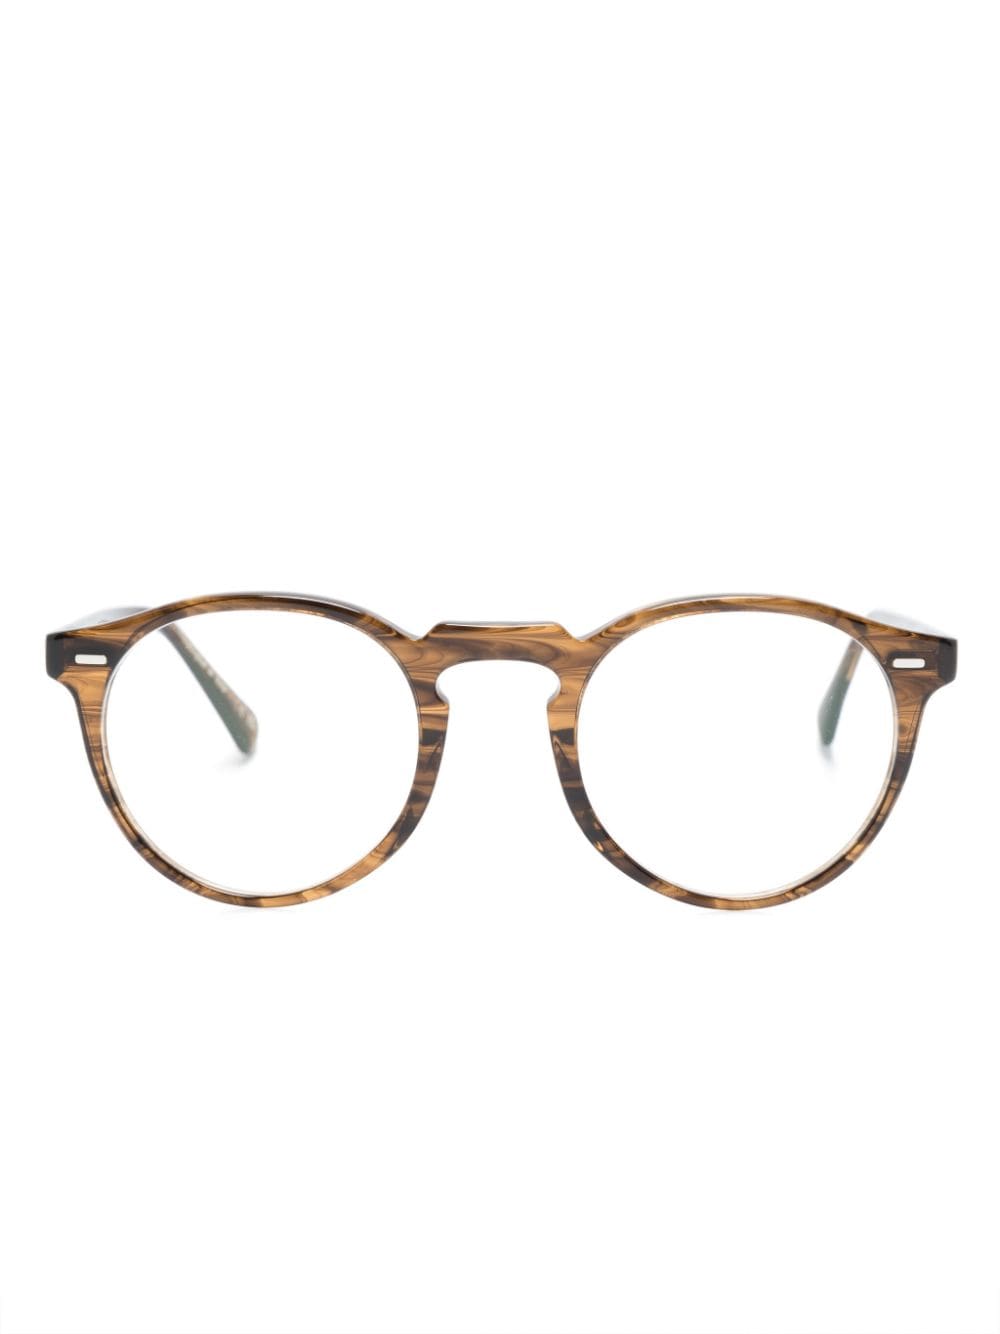 Oliver Peoples Gemusterte Brille mit rundem Gestell - Braun von Oliver Peoples